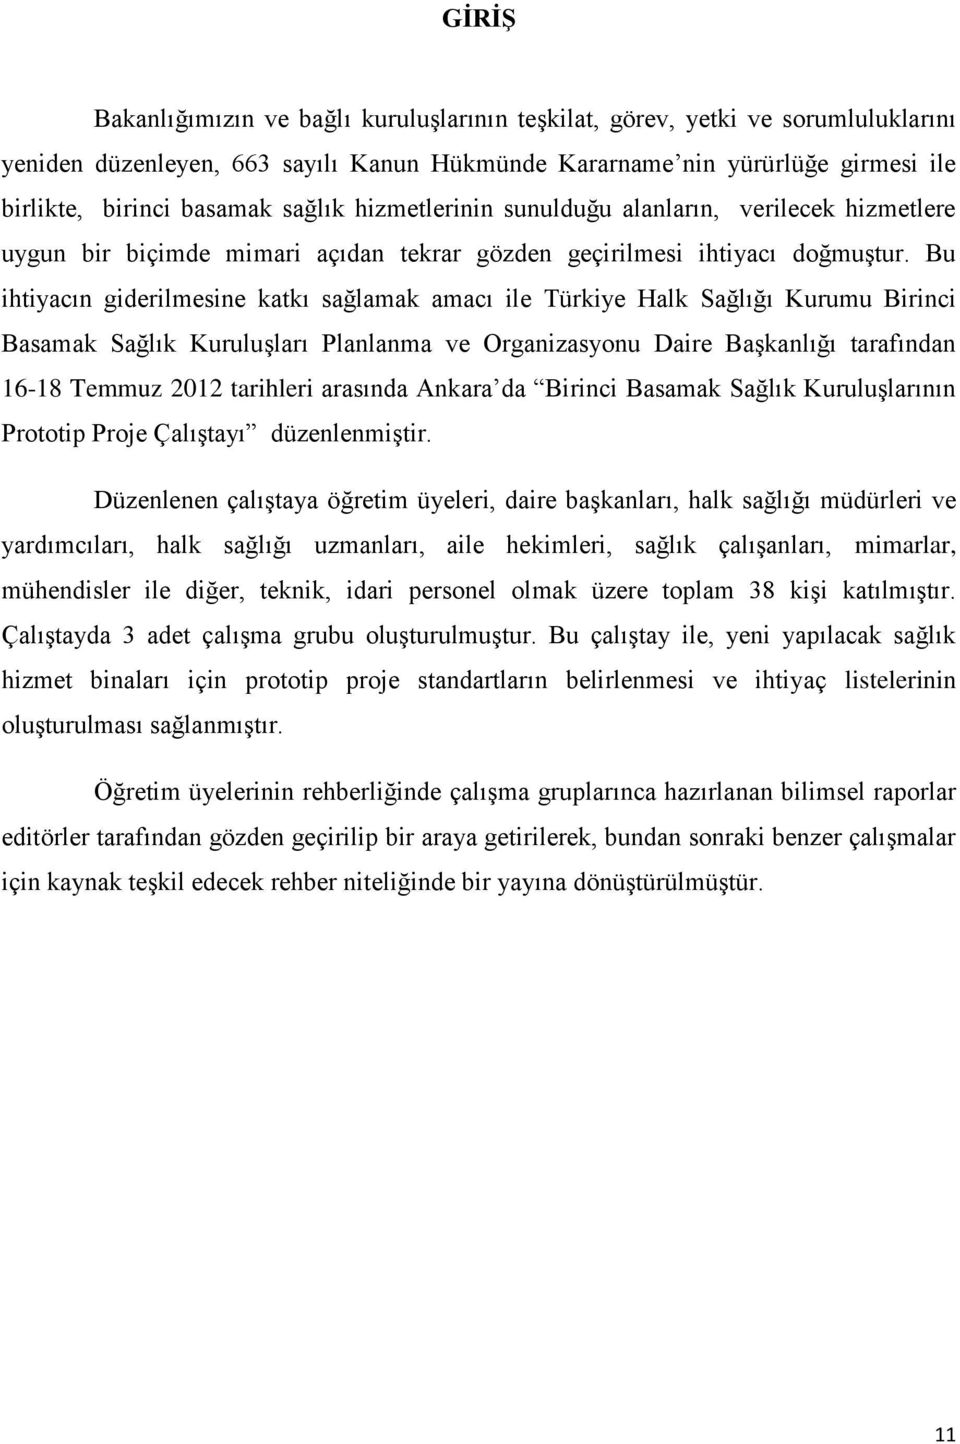 Bu ihtiyacın giderilmesine katkı sağlamak amacı ile Türkiye Halk Sağlığı Kurumu Birinci Basamak Sağlık Kuruluşları Planlanma ve Organizasyonu Daire Başkanlığı tarafından 16-18 Temmuz 2012 tarihleri